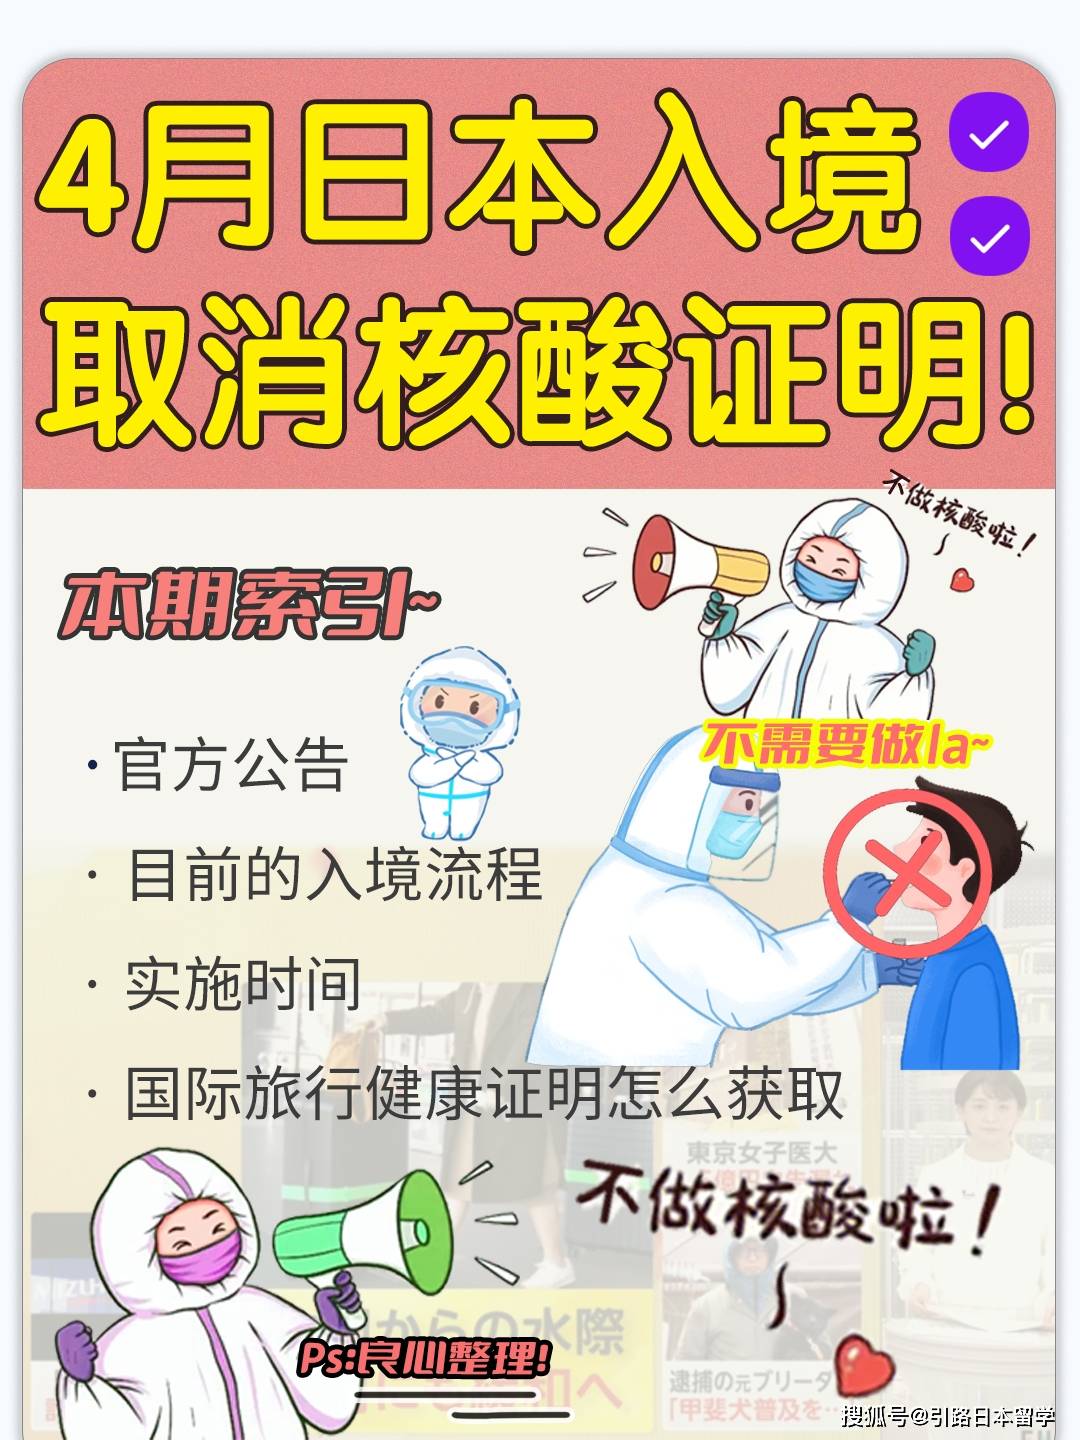 富士苹果竖版照片:4月上旬日本将取消中国旅客核酸阴性证明